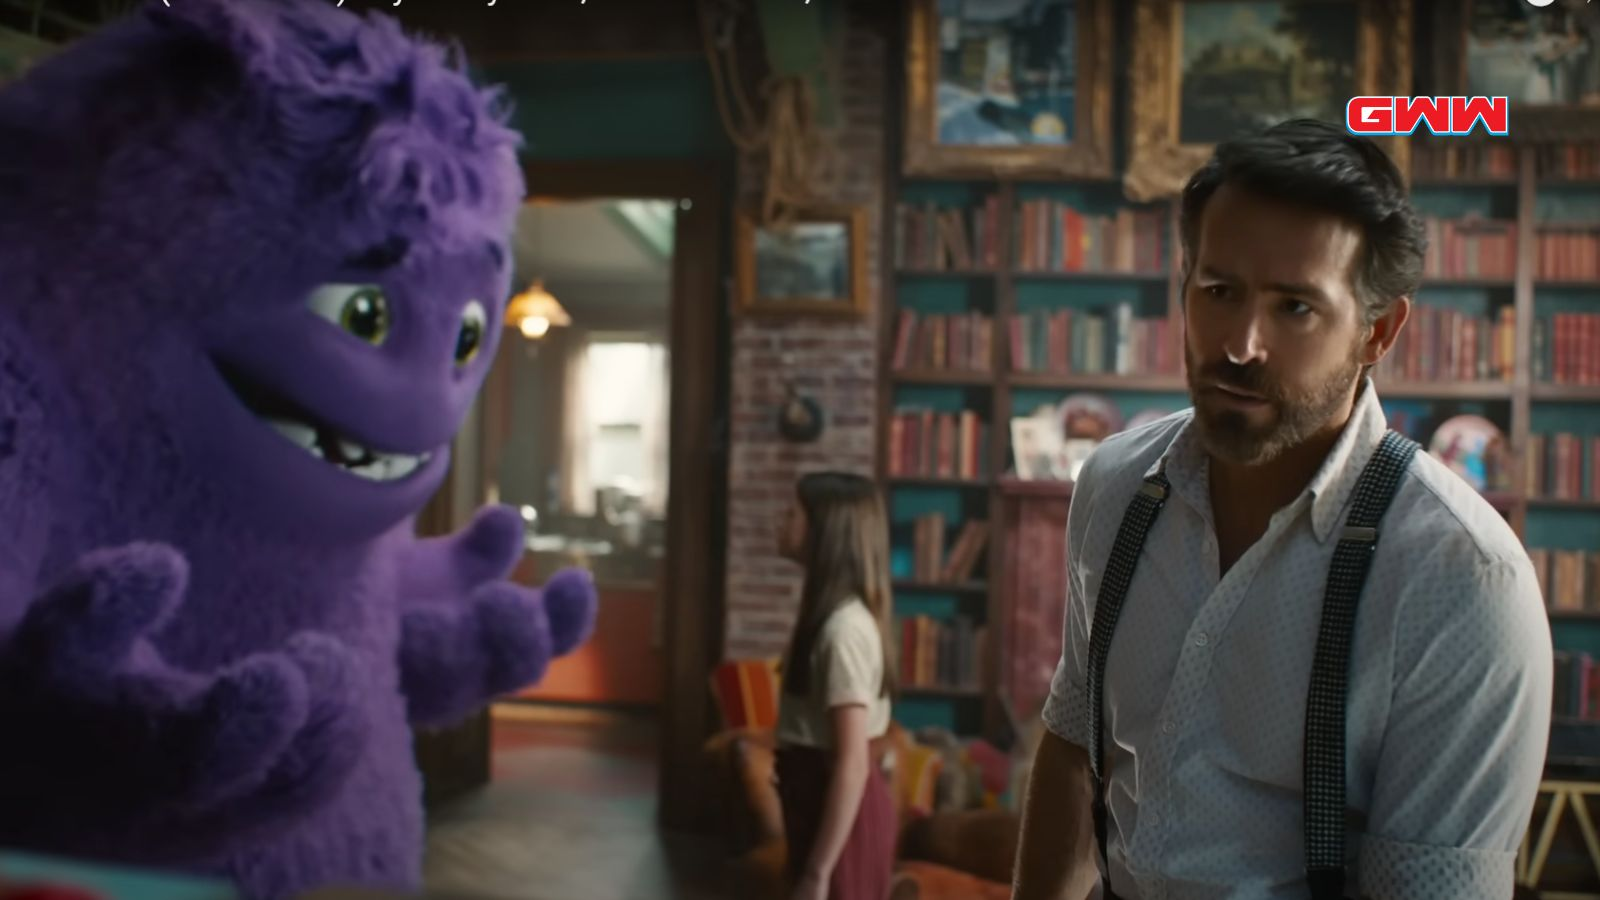 Blue hablando con Cal, interpretado por Ryan Reynolds, en la película "IF".